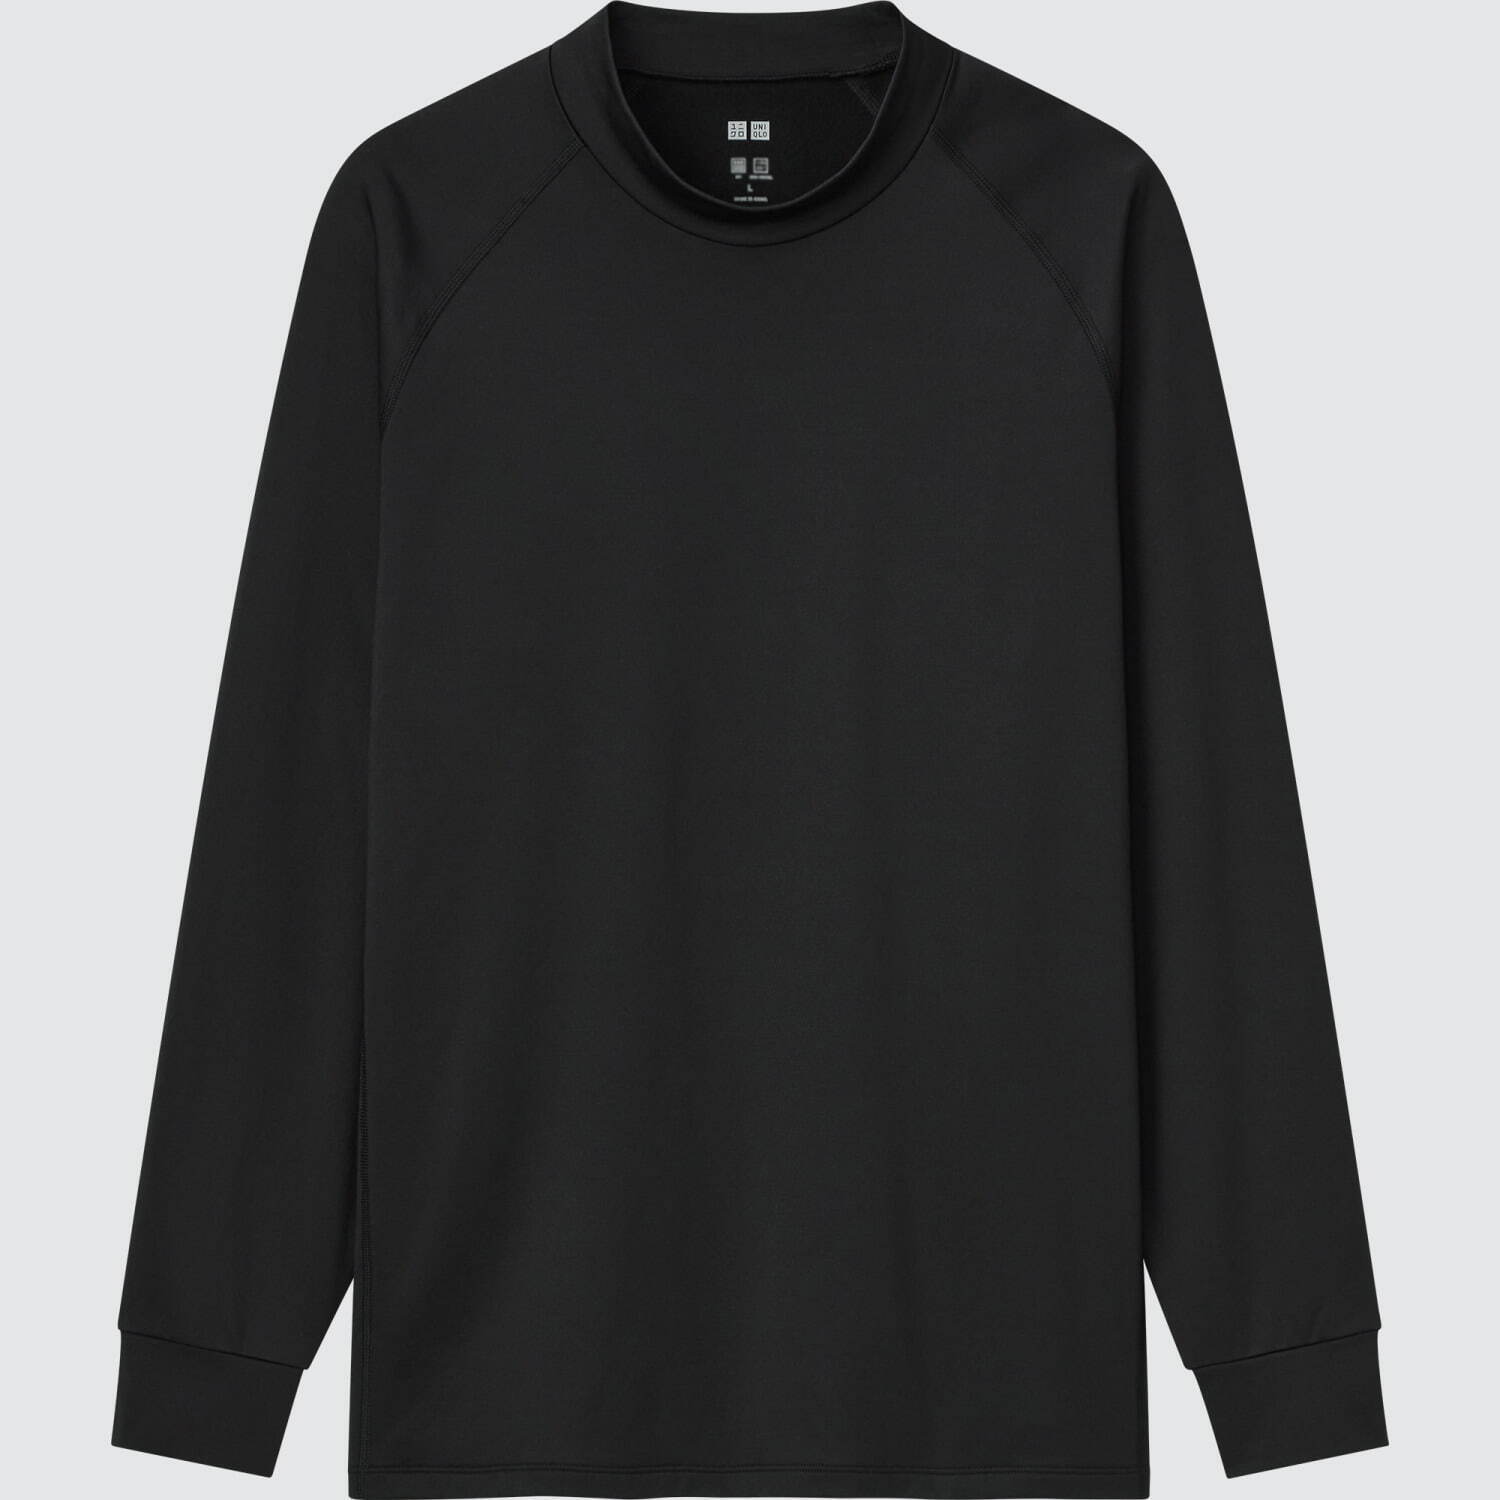 ウルトラストレッチドライ Tシャツ(長袖) +S 2,990円